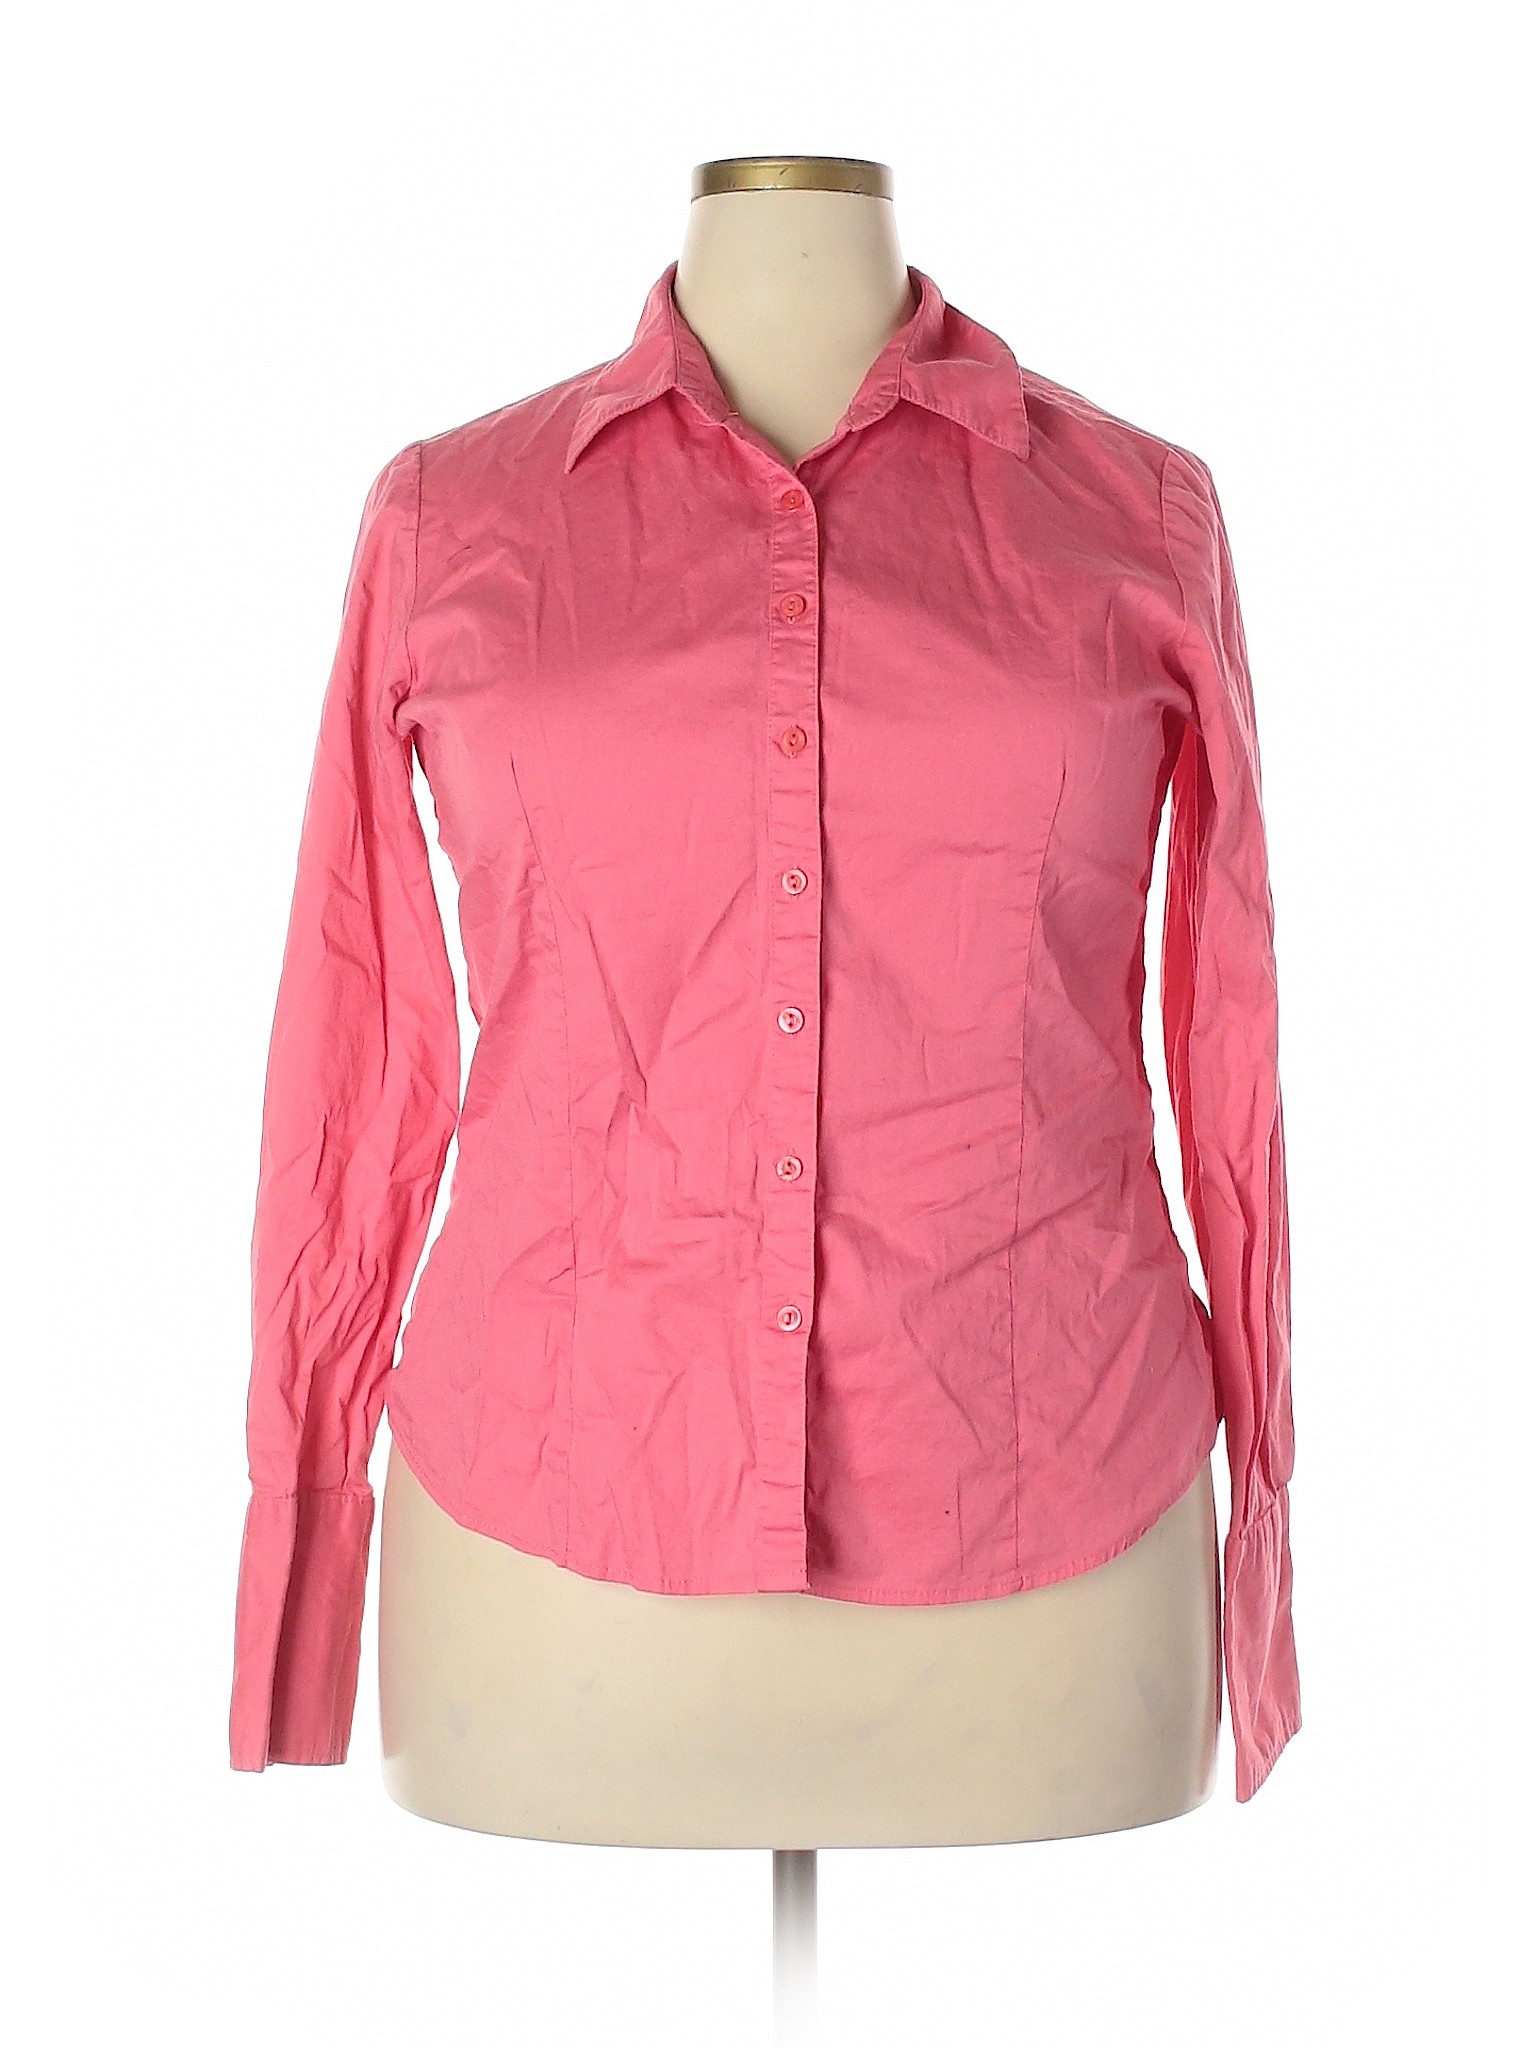 Assorted Brands Women Pink Long Sleeve Button-Down Shirt 2X Plus | eBay